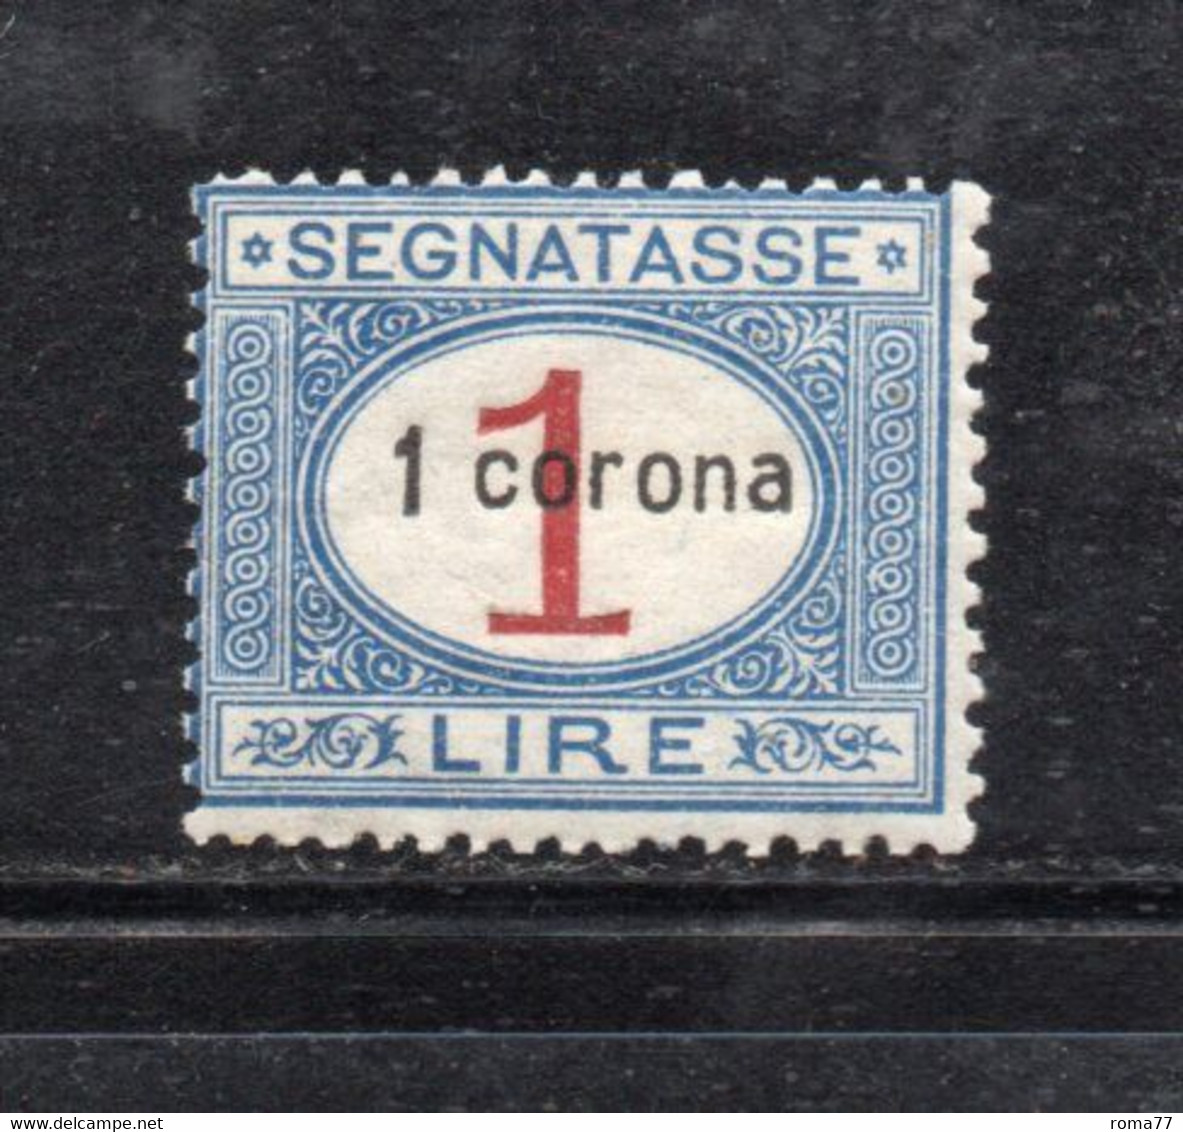 Y2352 - DALMAZIA 1922, Segnatasse Il N. 2  Con Gomma Integra  ***  MNH - Dalmatia